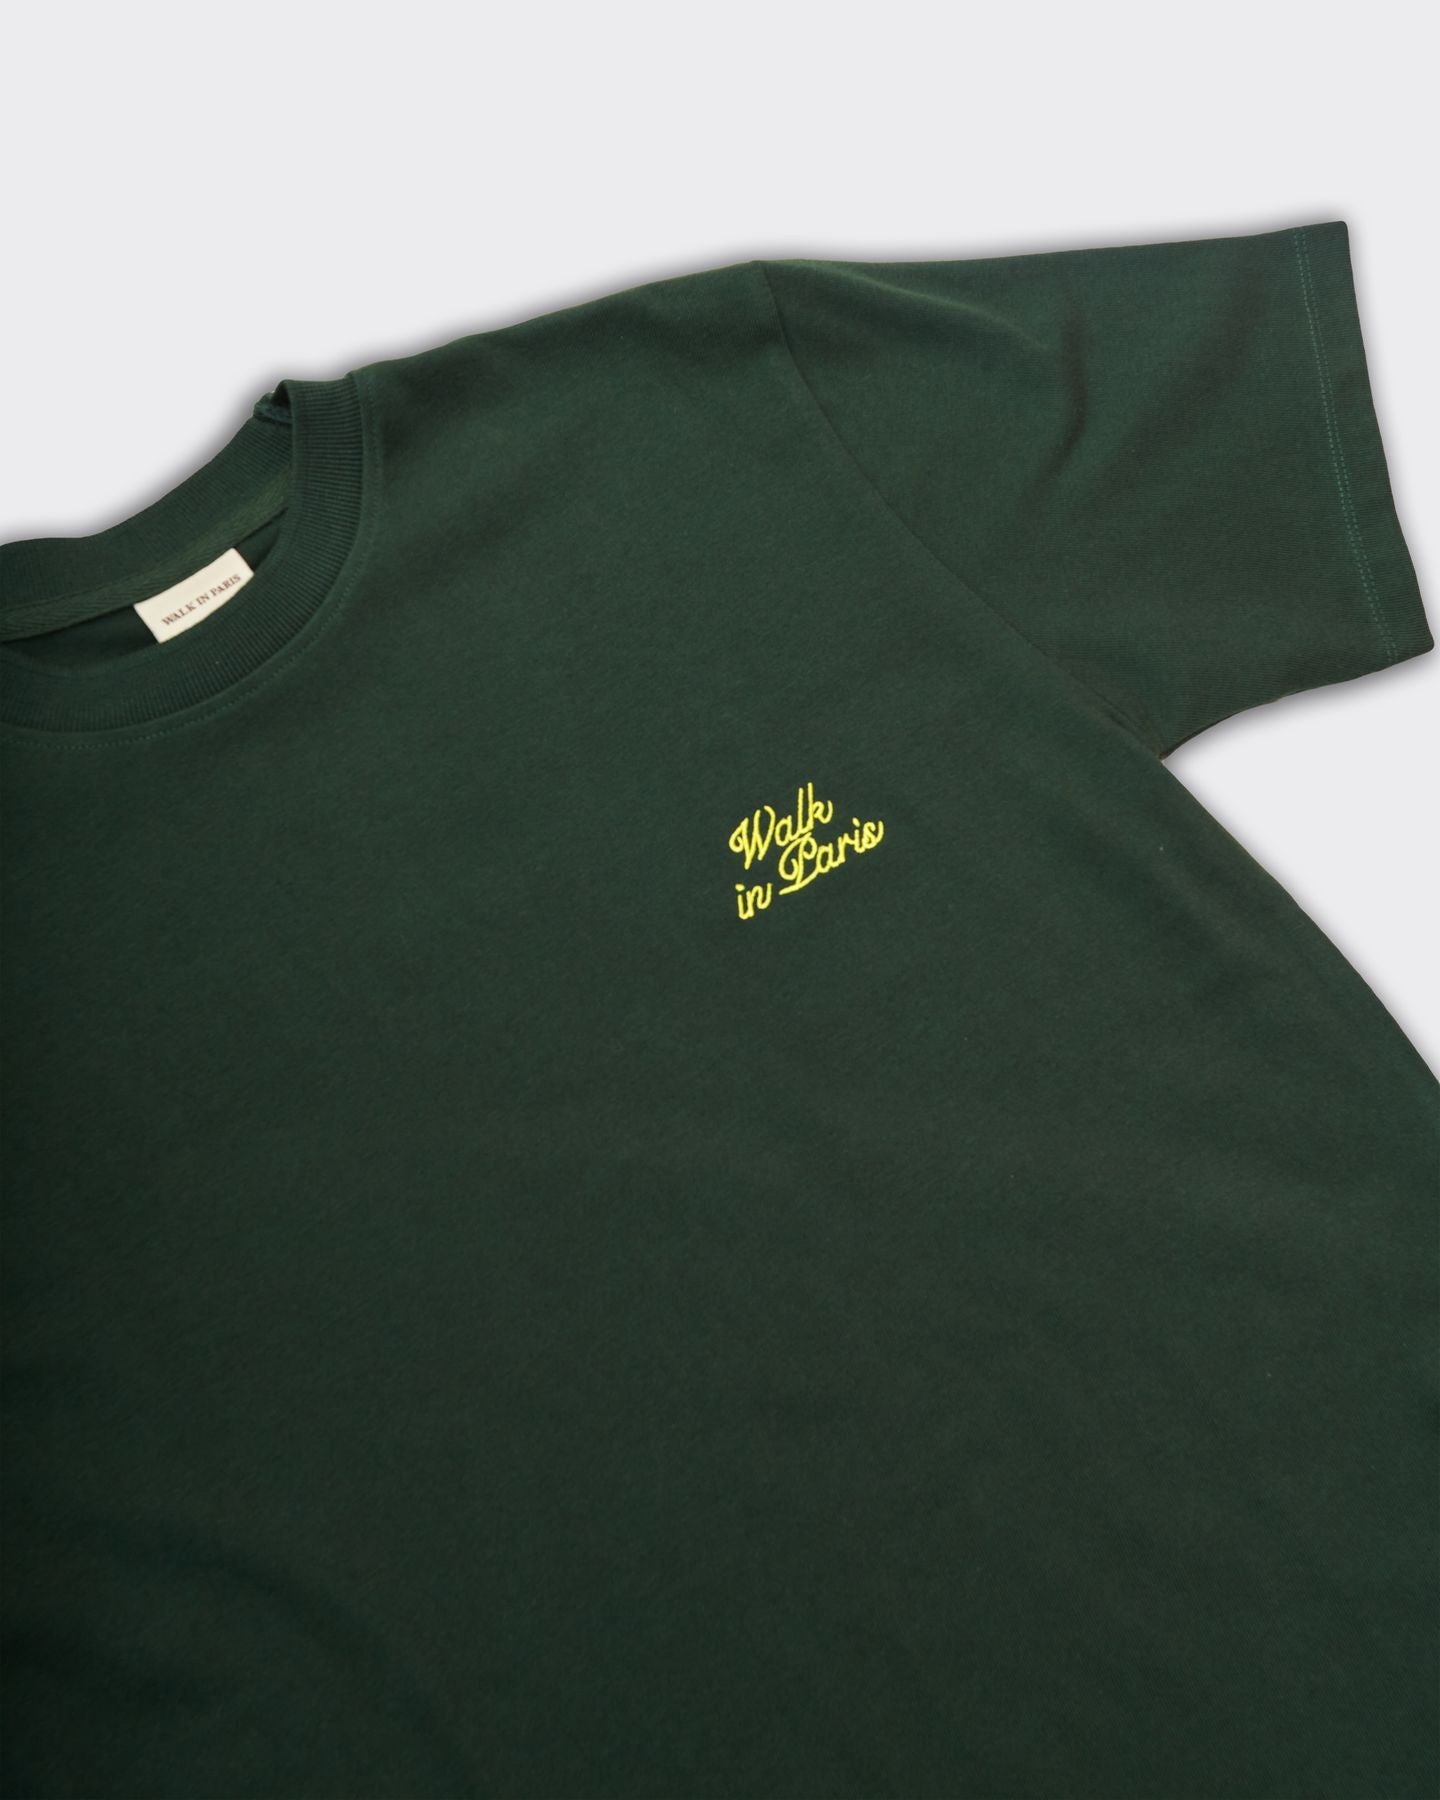 T-Shirt Logo Verde